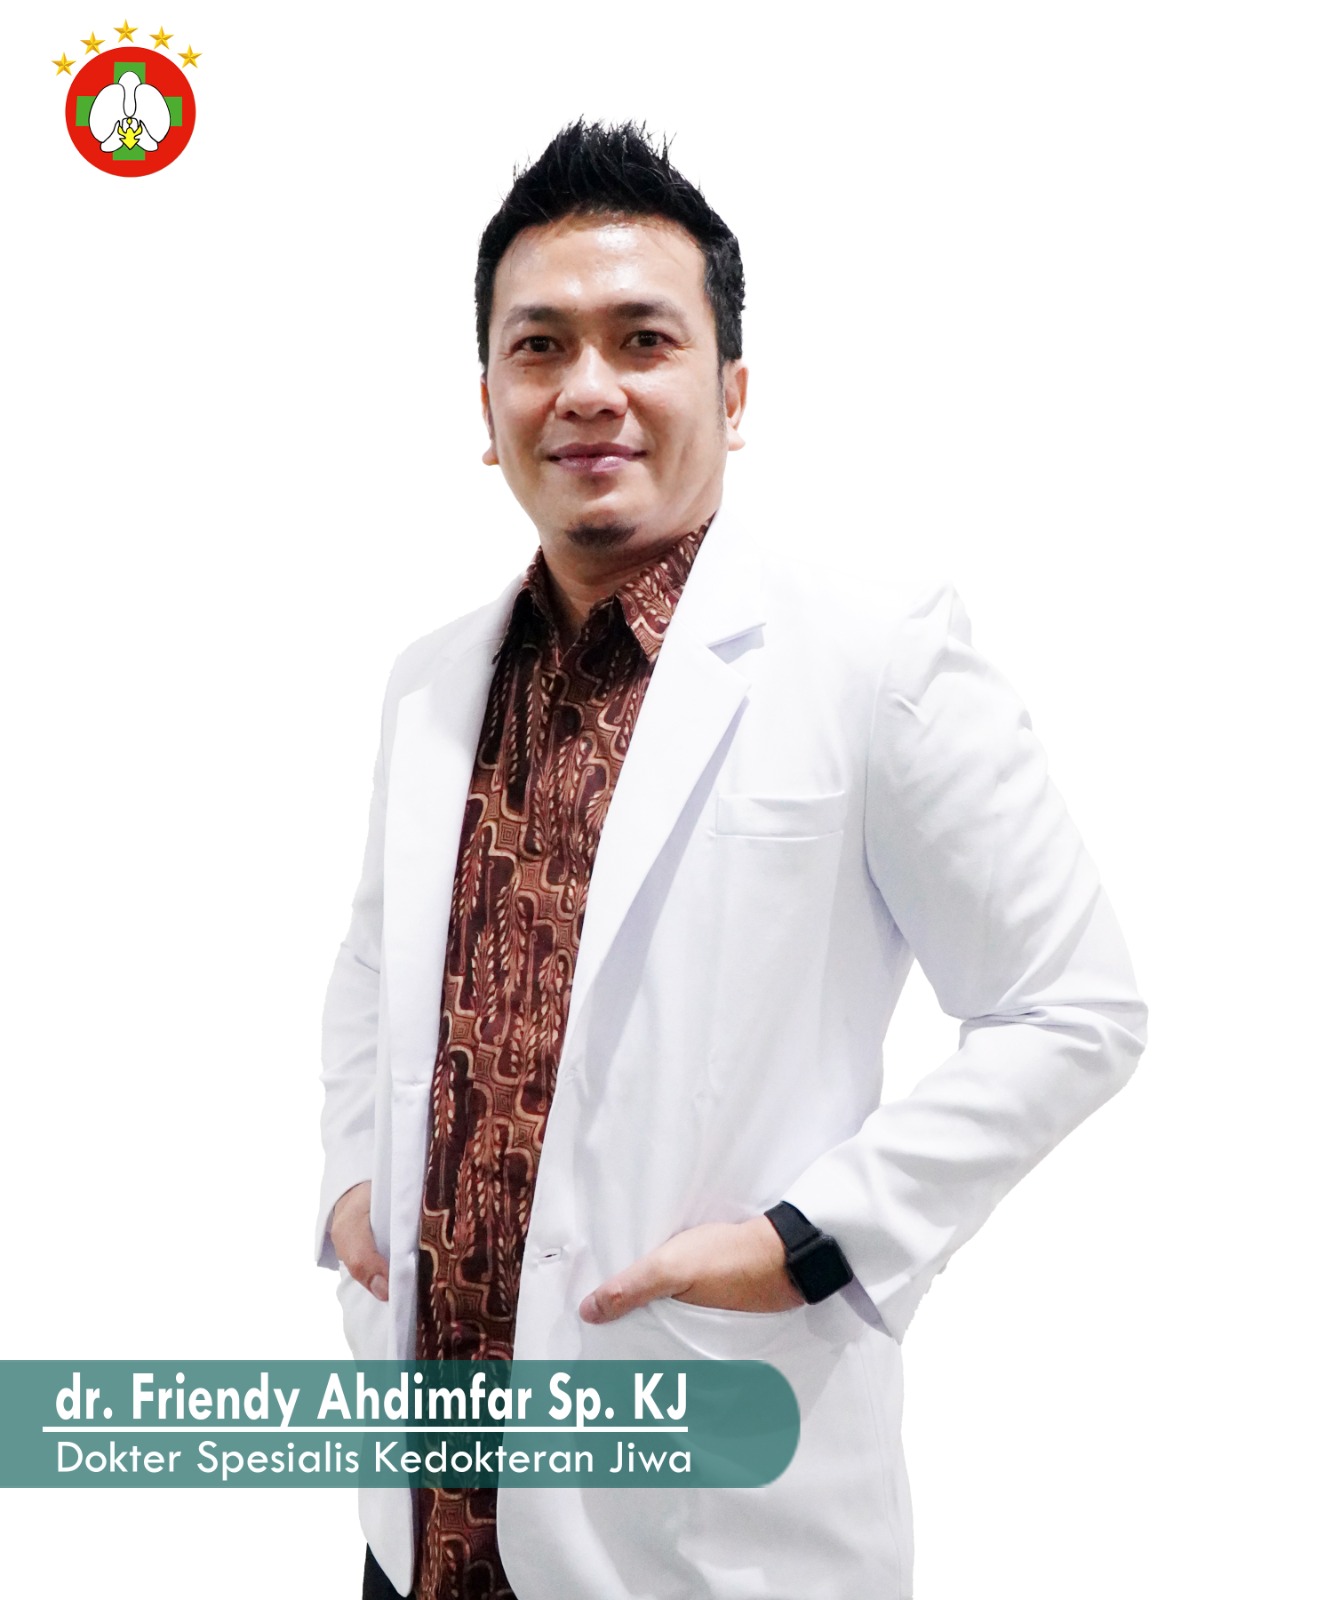 dr. Friendy Ahdimfar Sp.KJ